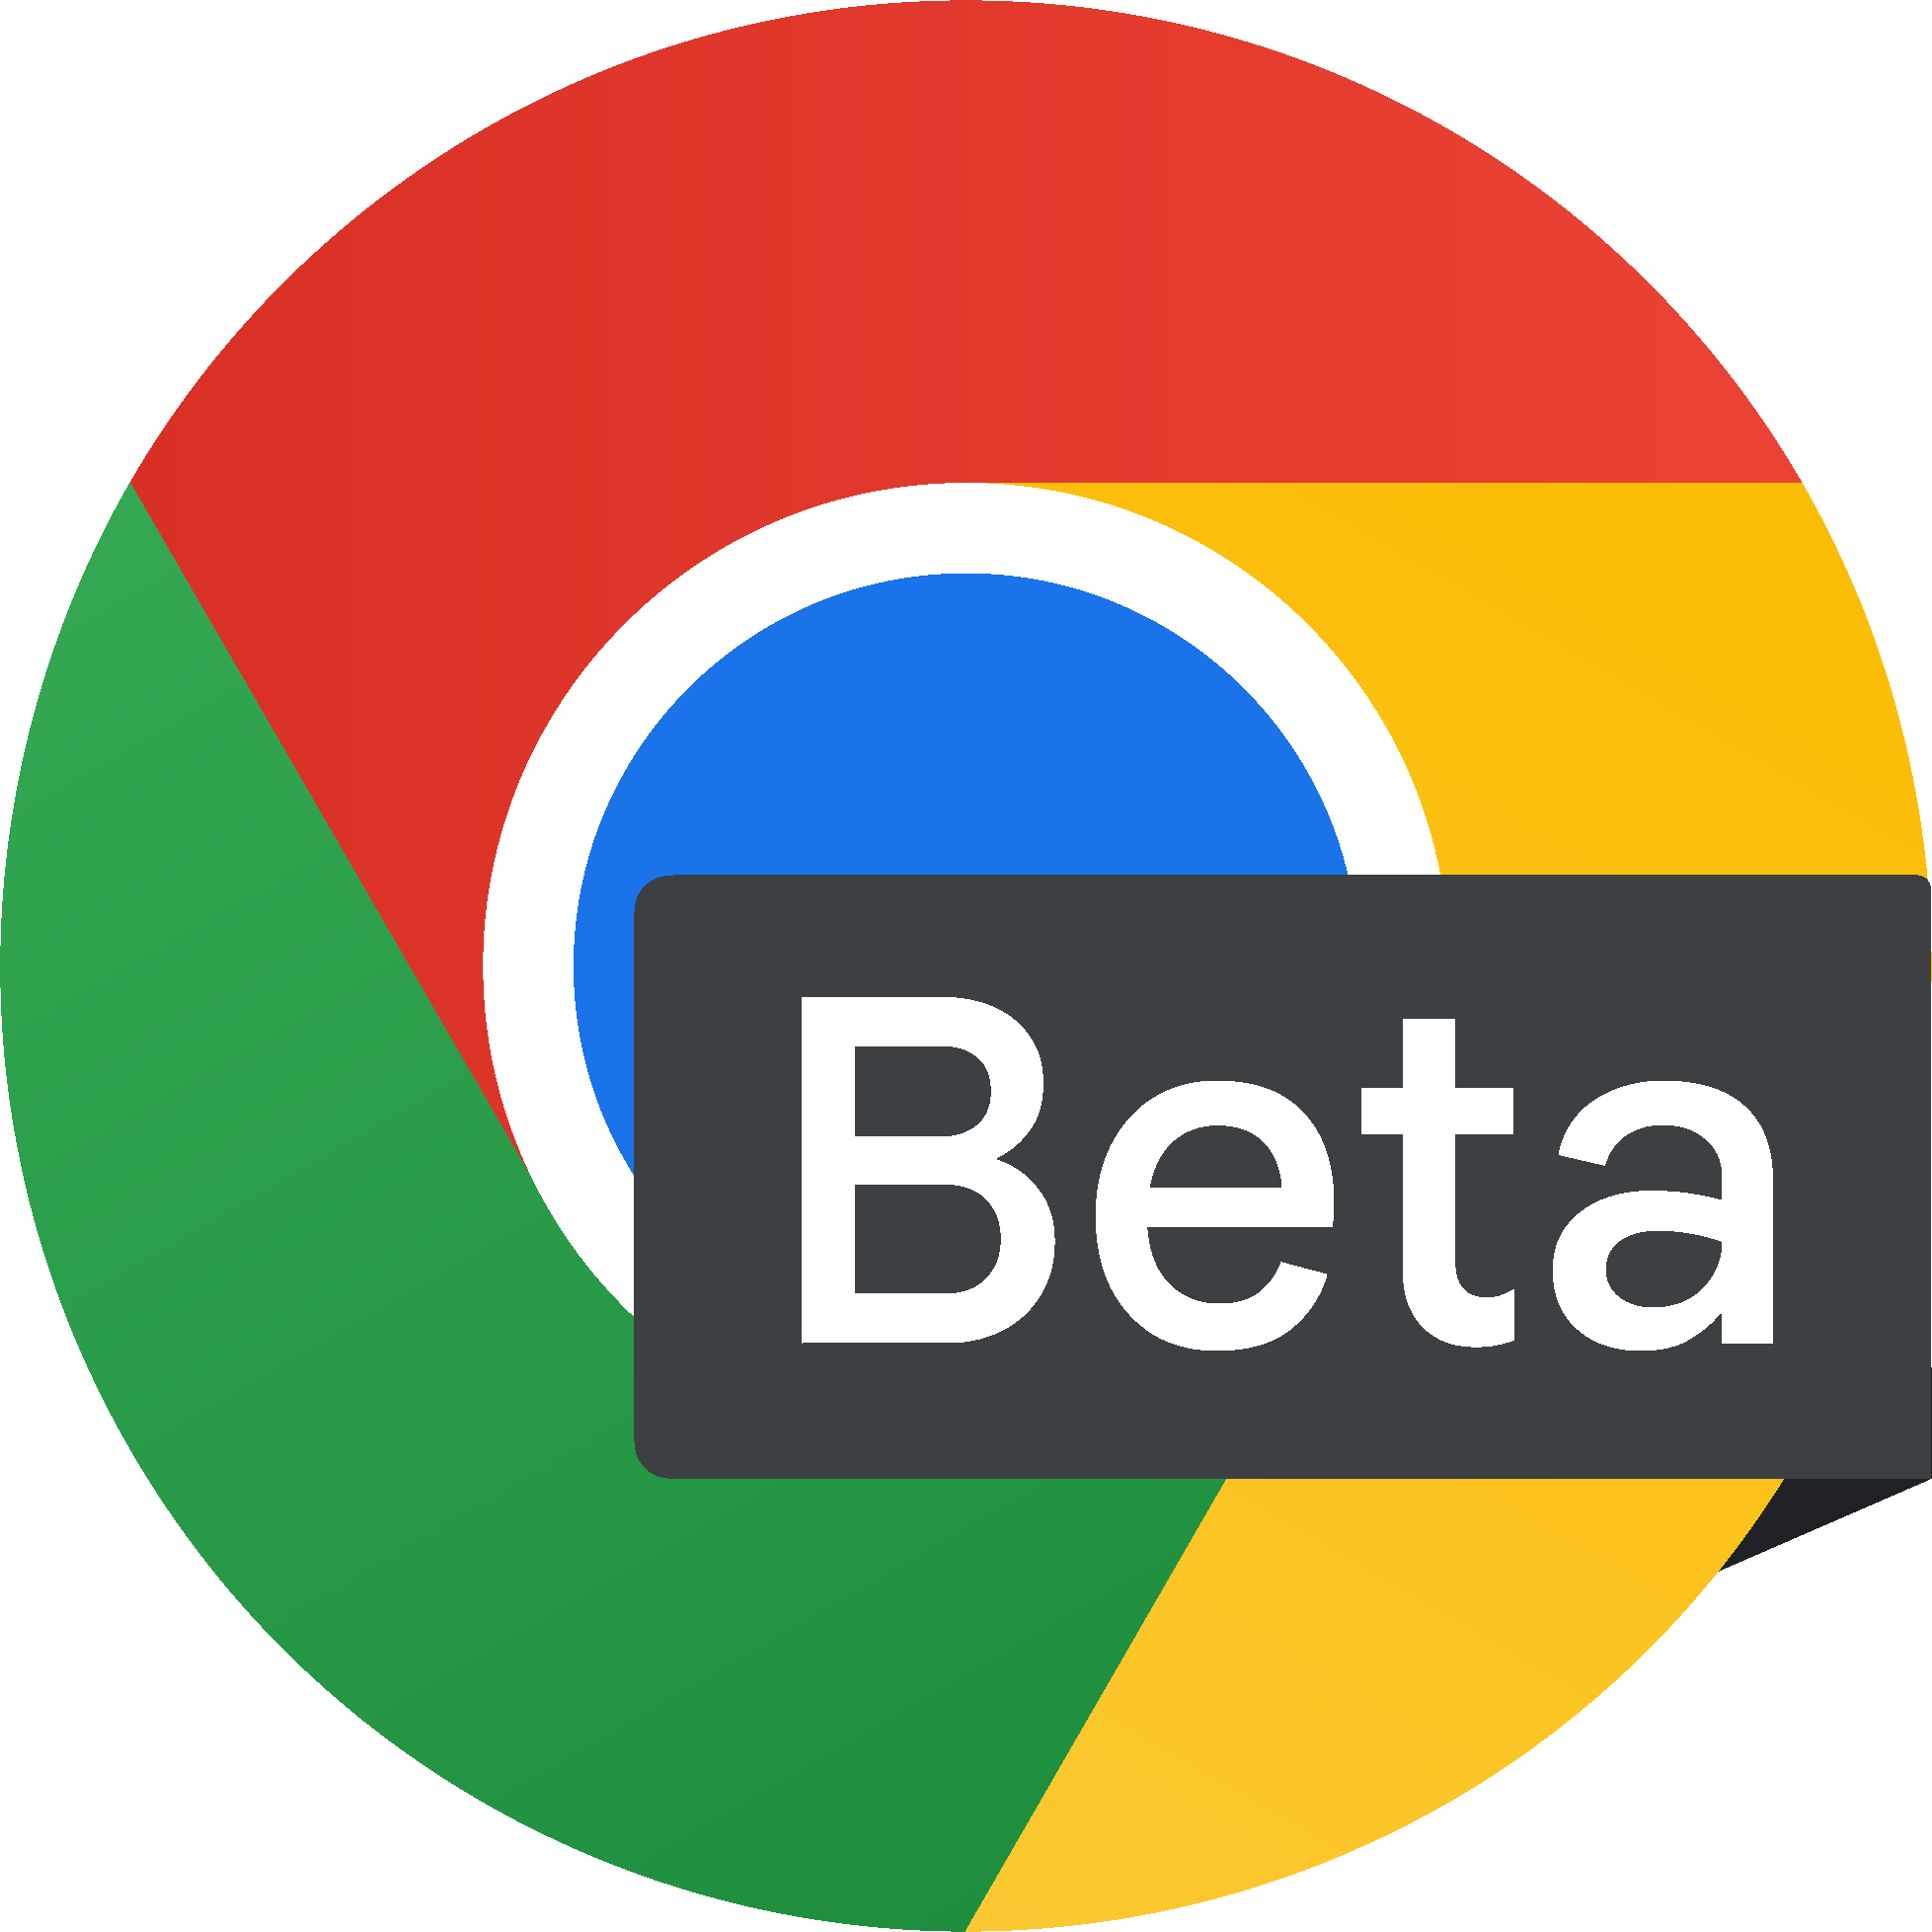 הלוגו של Chrome בטא.